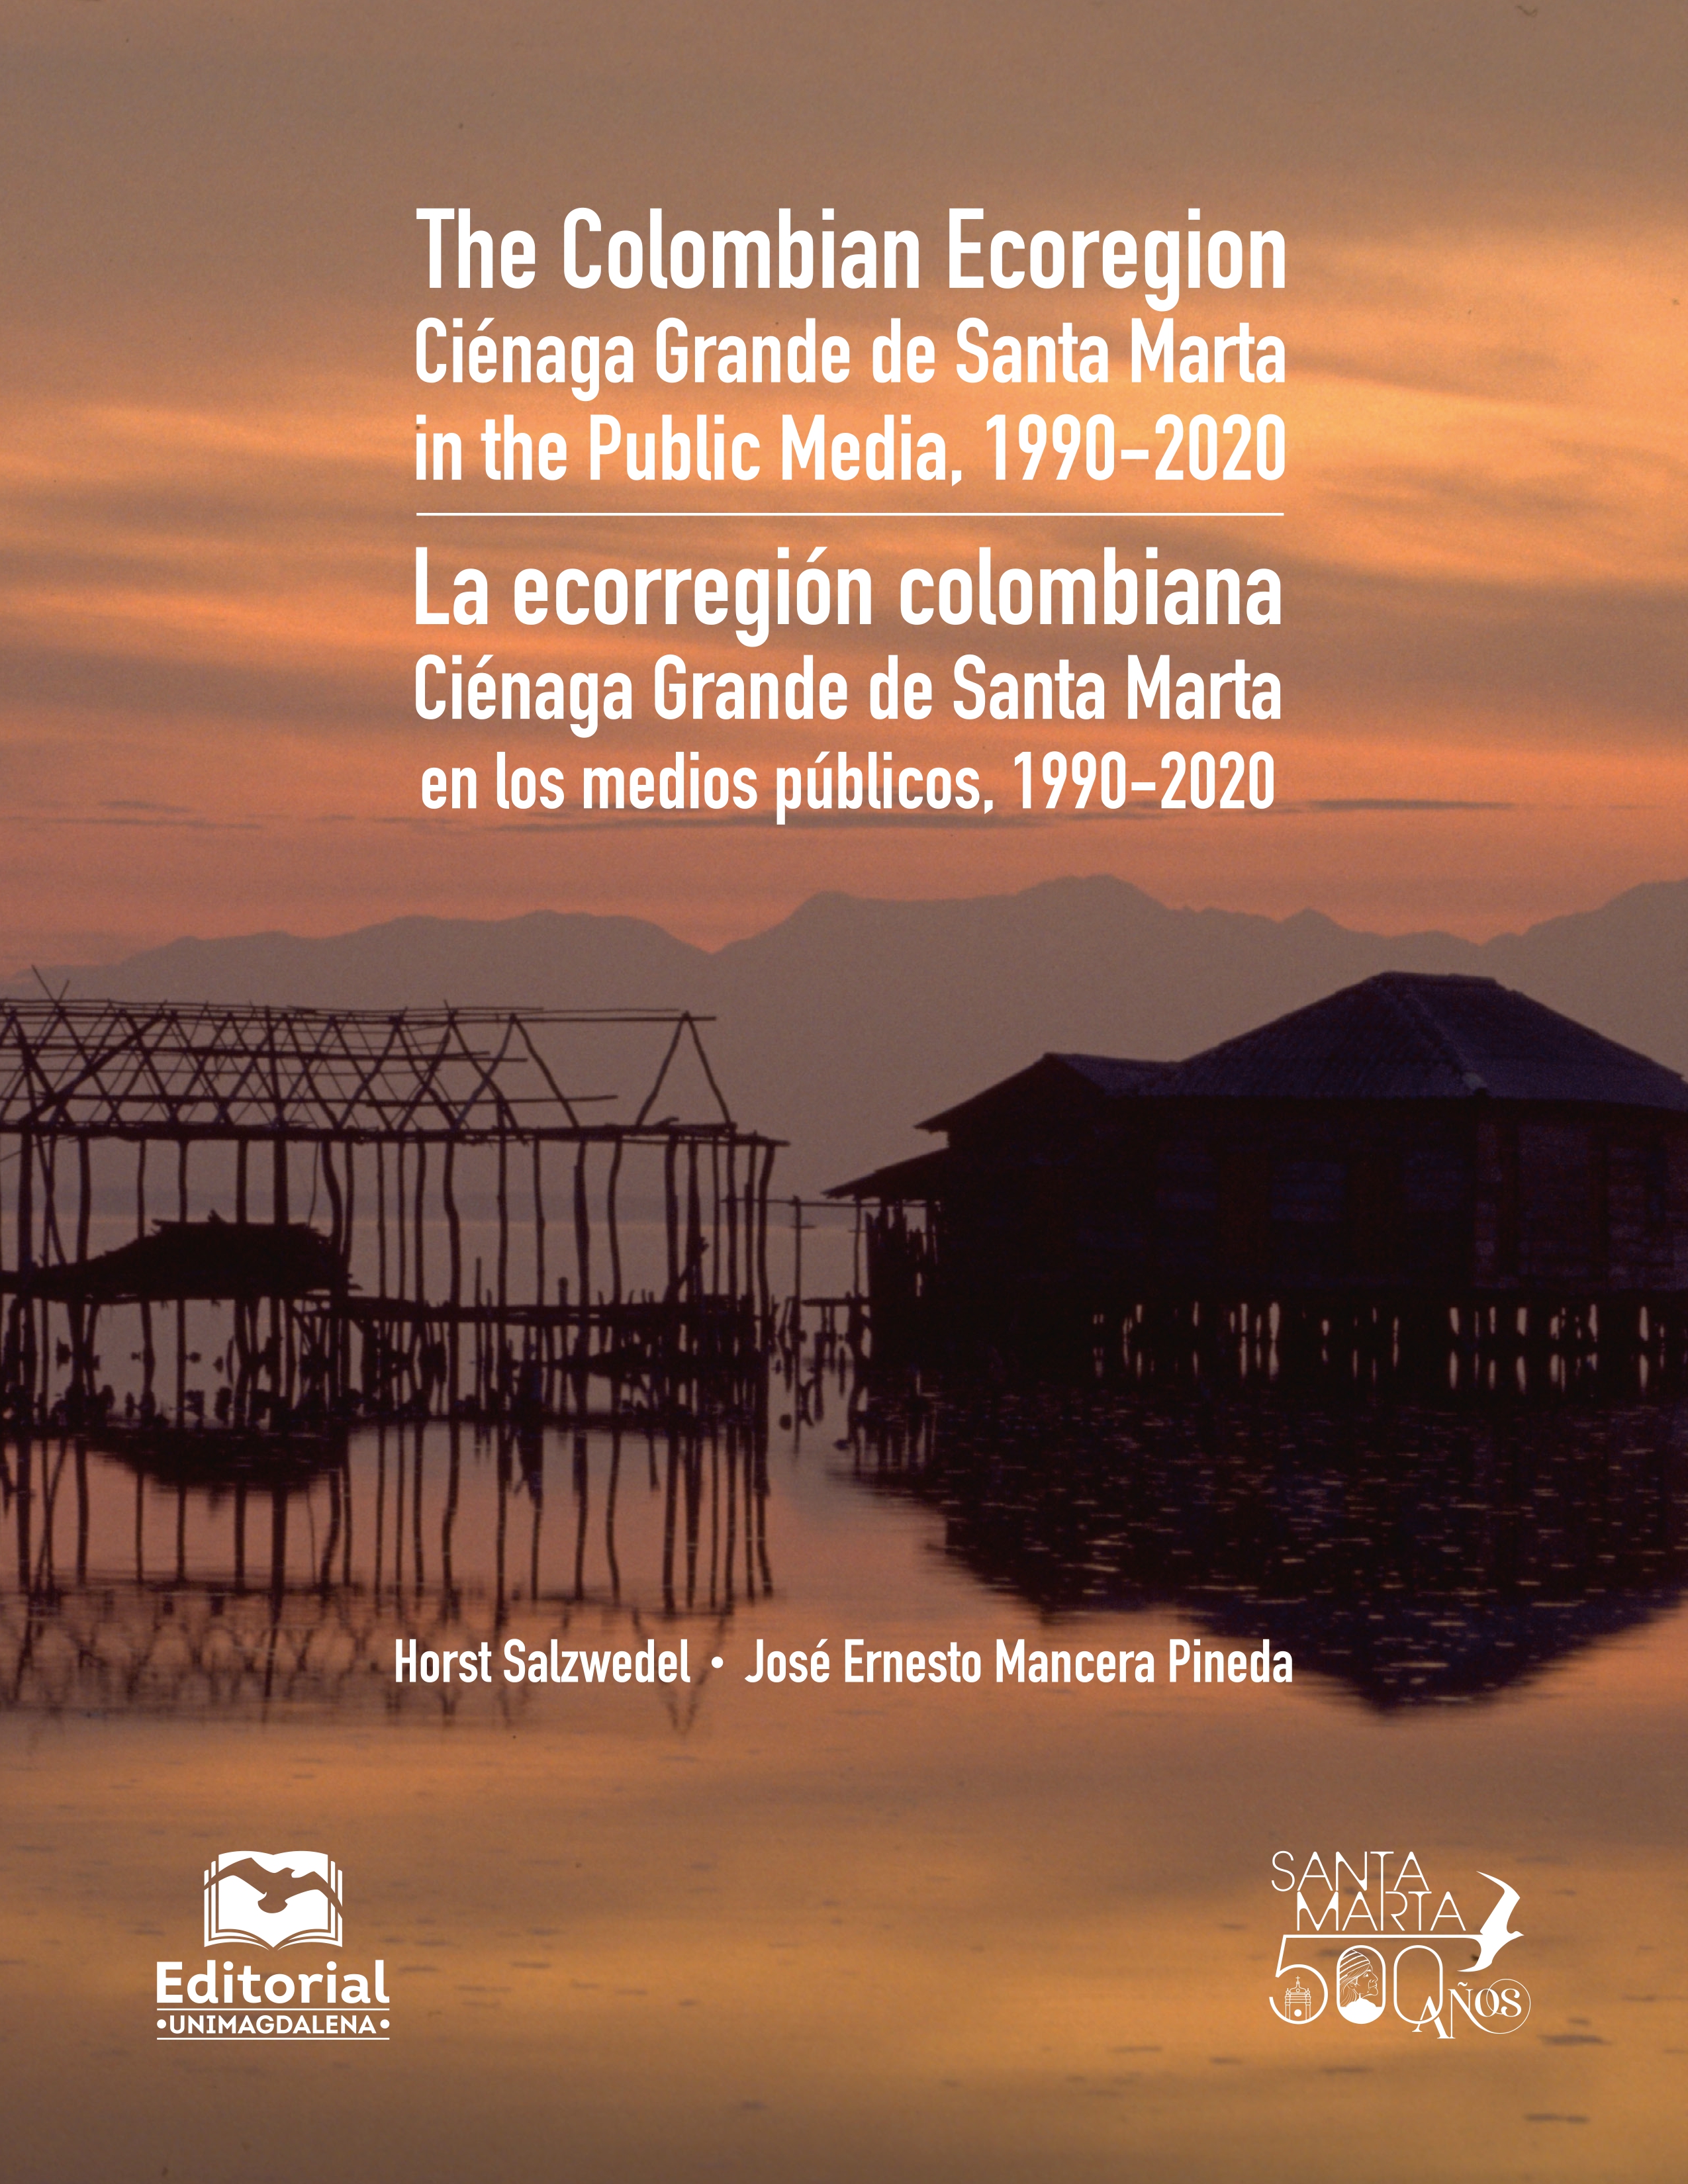 La ecorregión colombiana Ciénaga Grande de Santa Marta en los medios públicos, 1990-2020